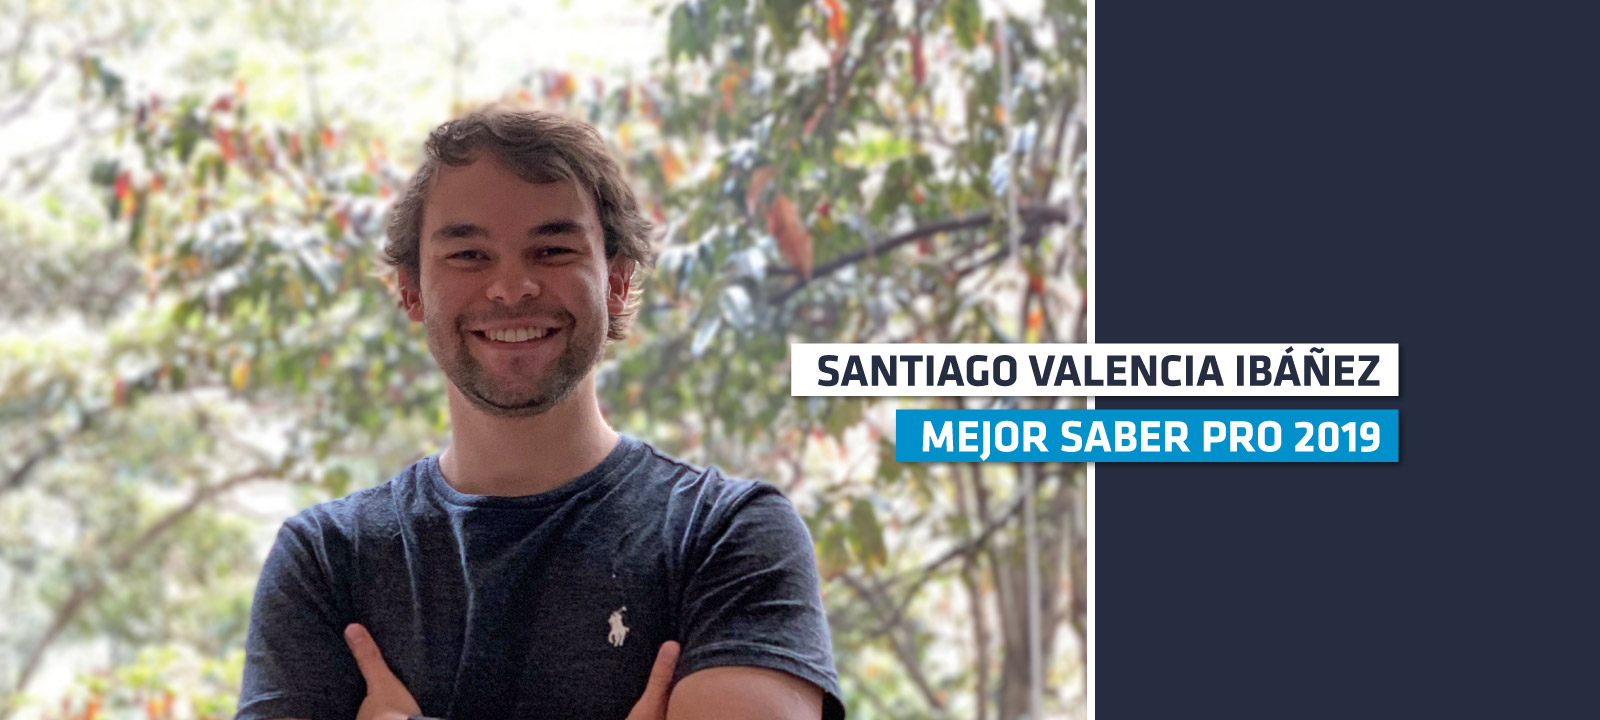 Santiago fue galardonado como el mejor saber pro del 2019